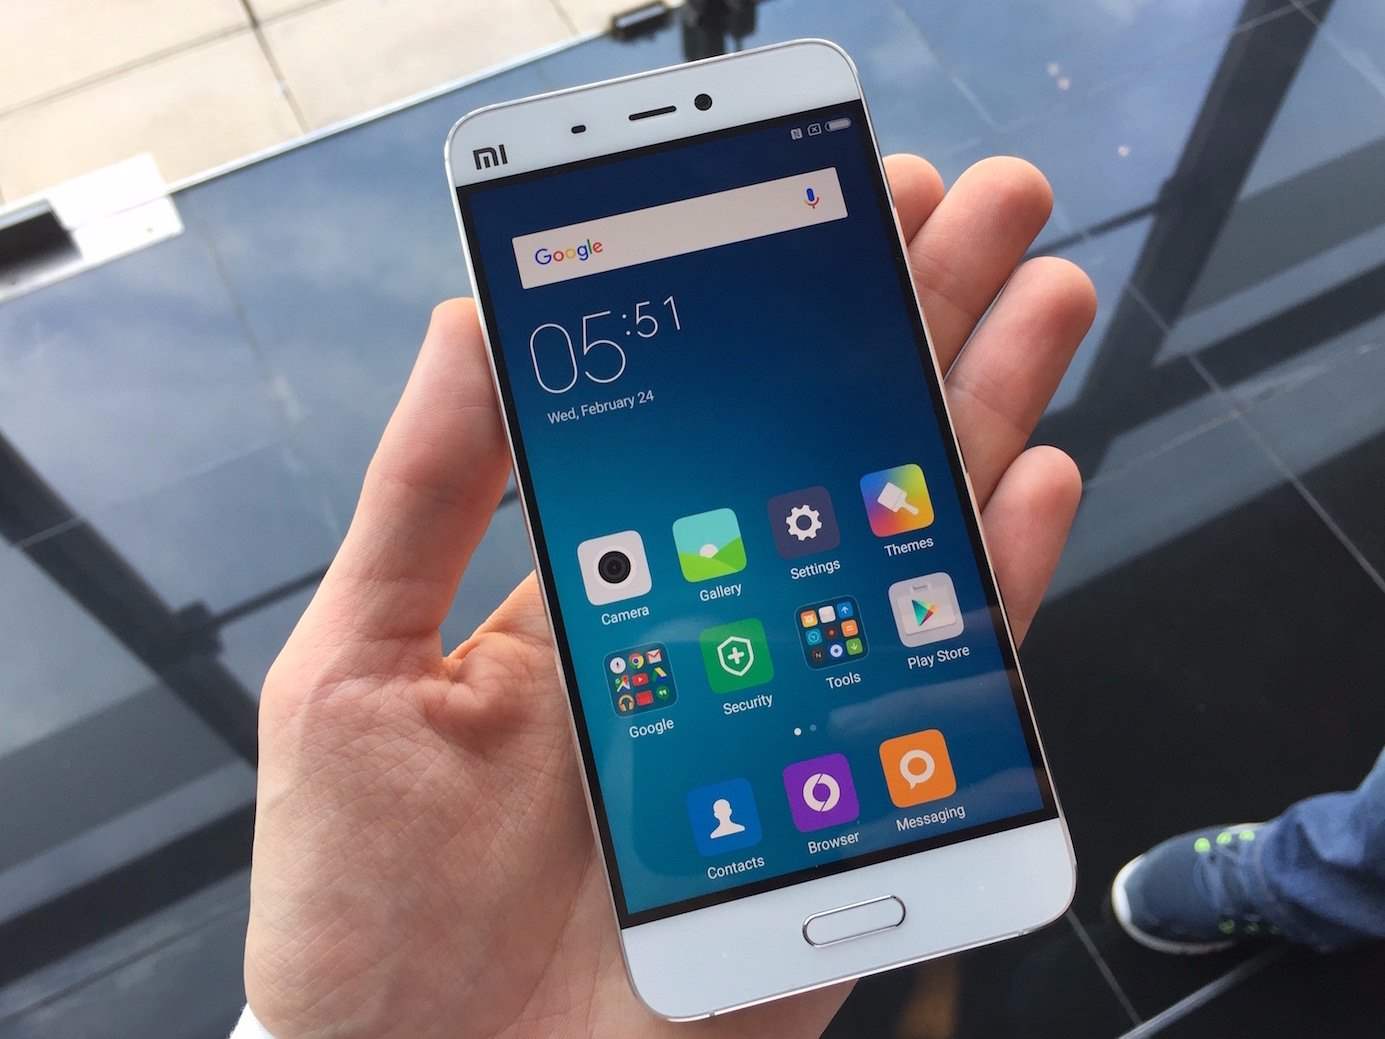 Harga Xiaomi Mi5 Spesifikasi Dan Rilis Indonesia Layar 2